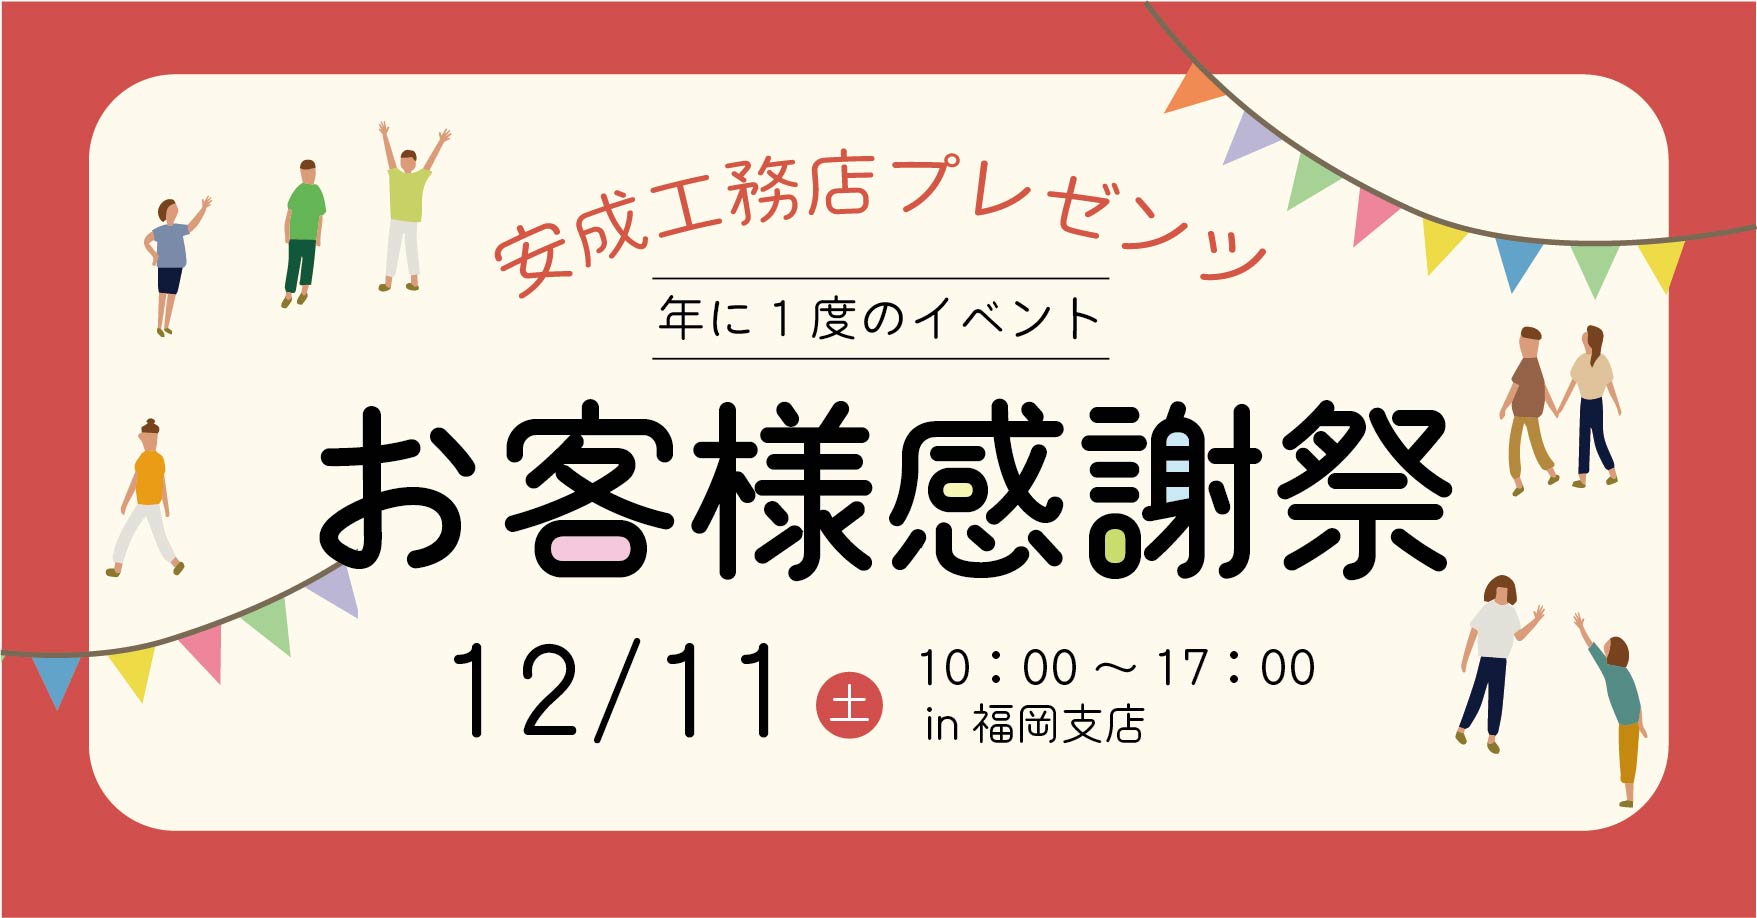 福岡 お客様感謝祭＠福岡支店//12/11(土)